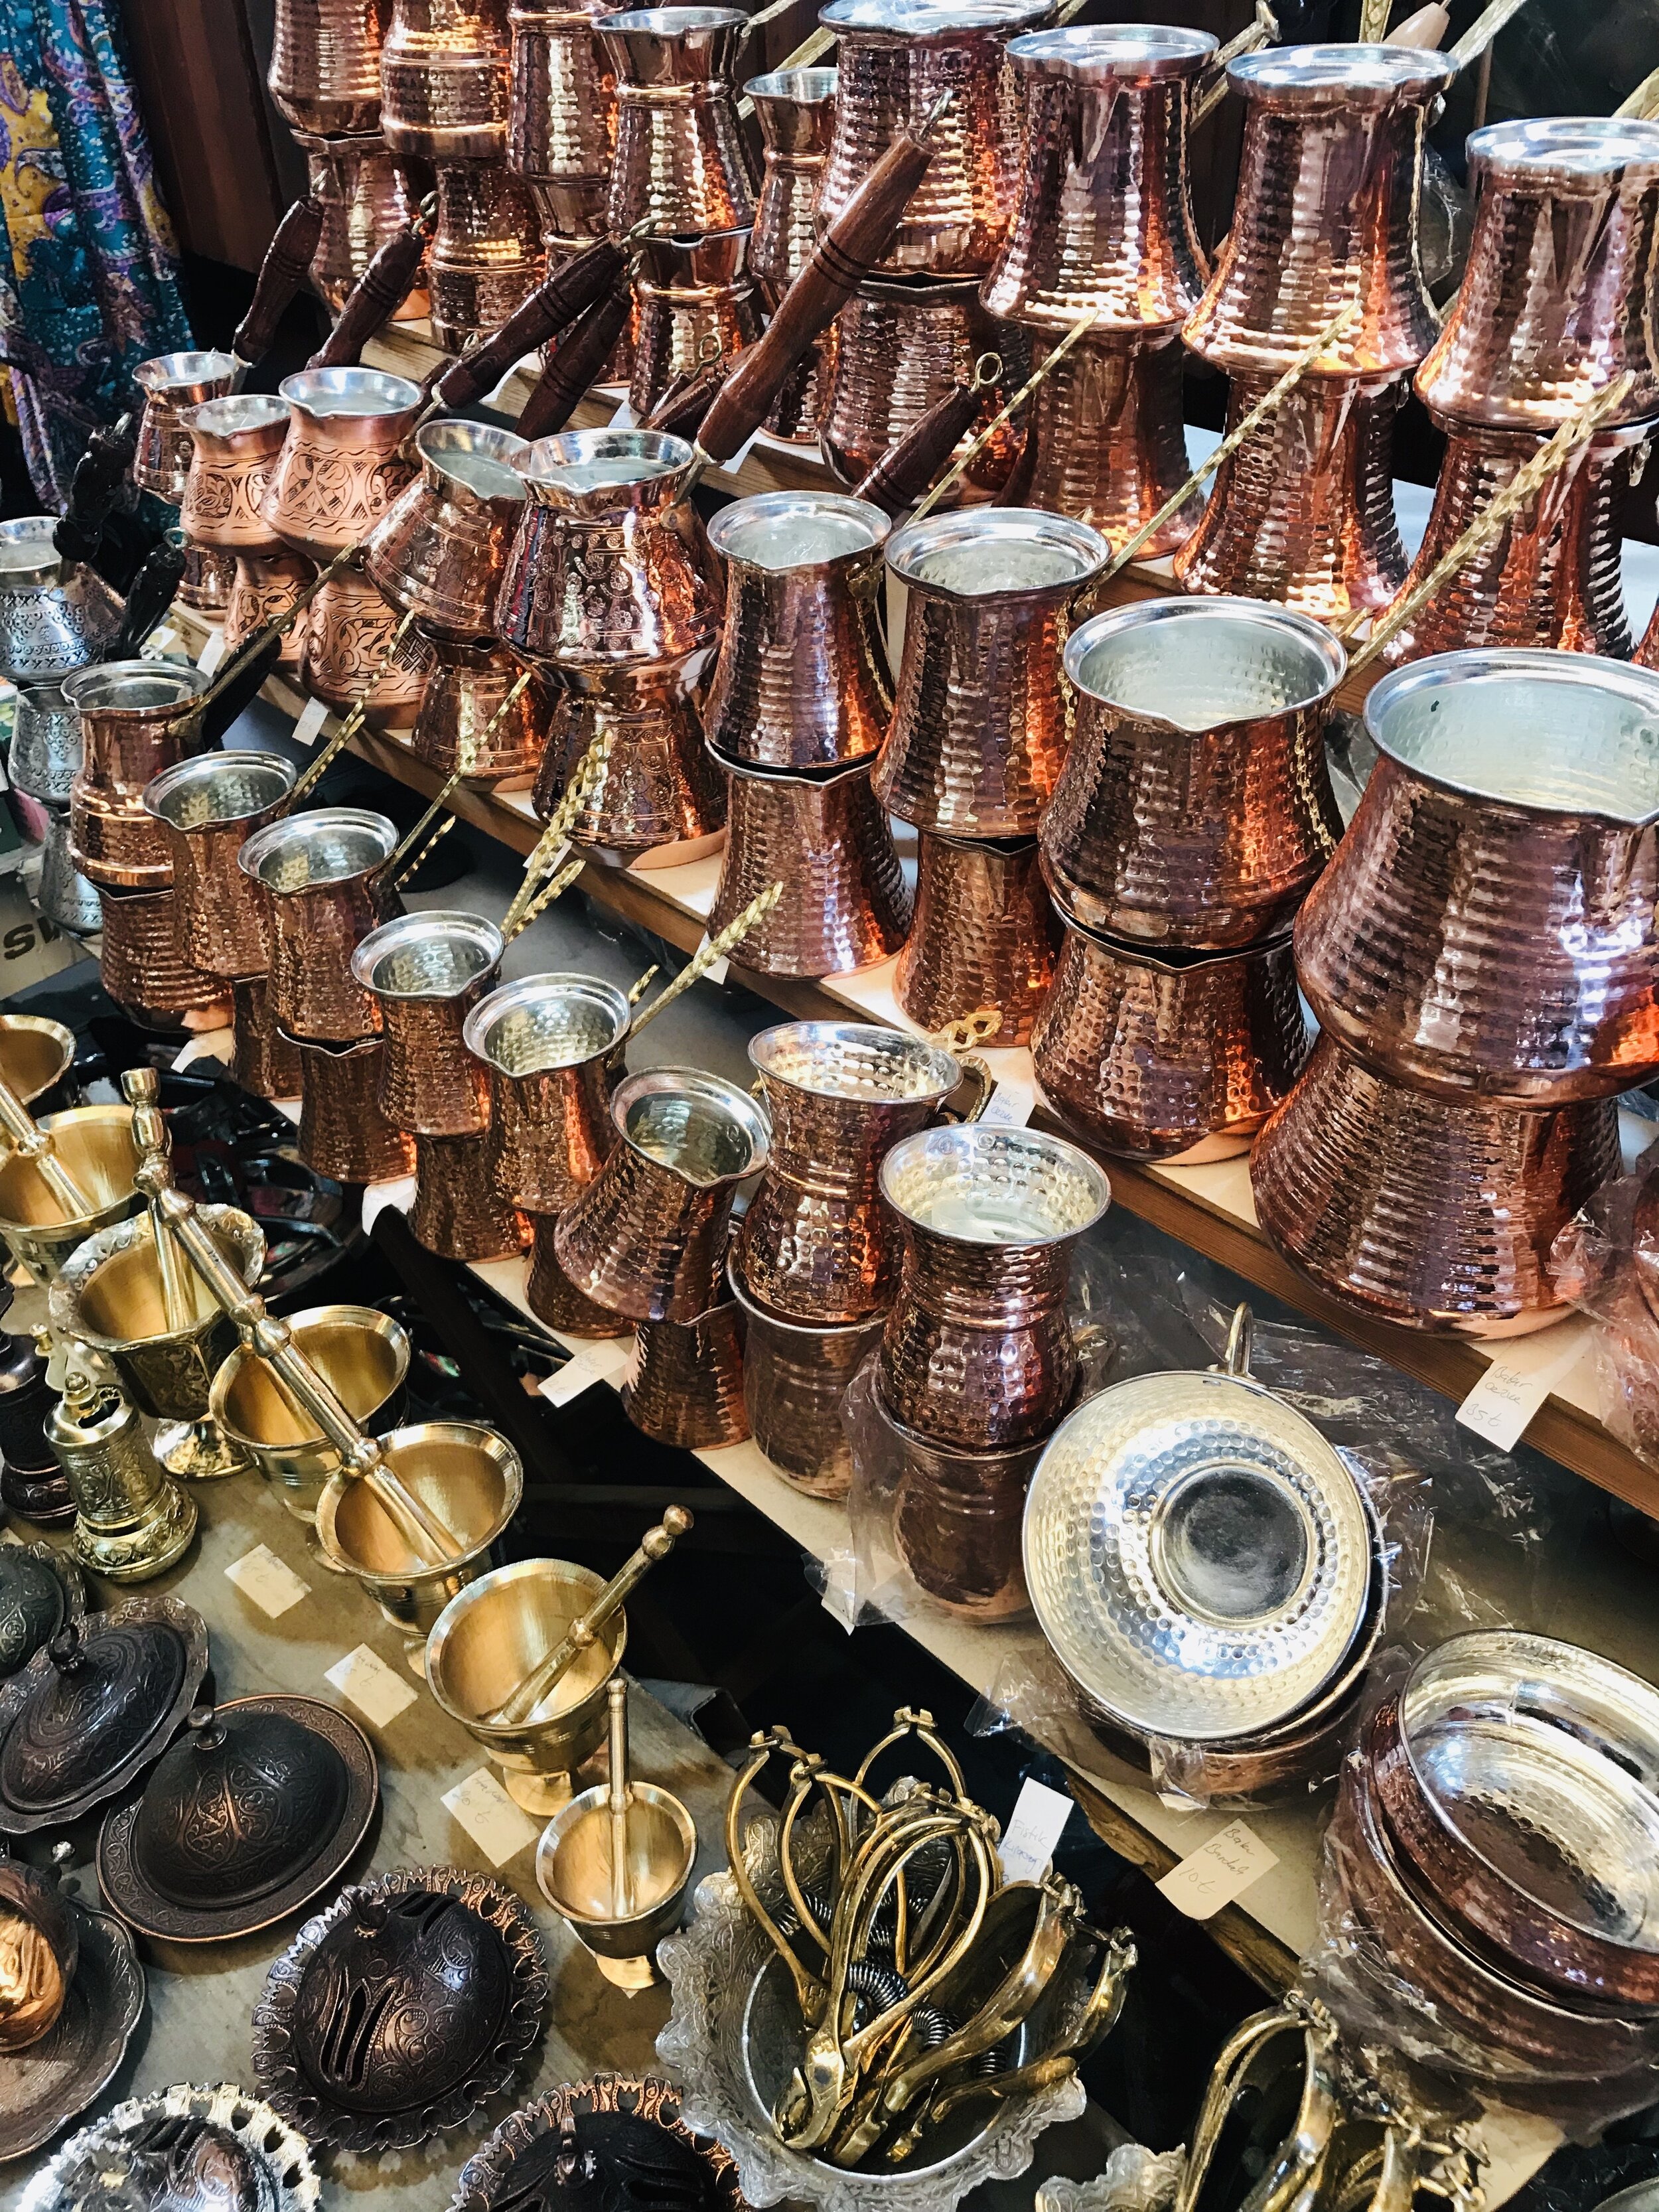 Coppersmith Bazaar